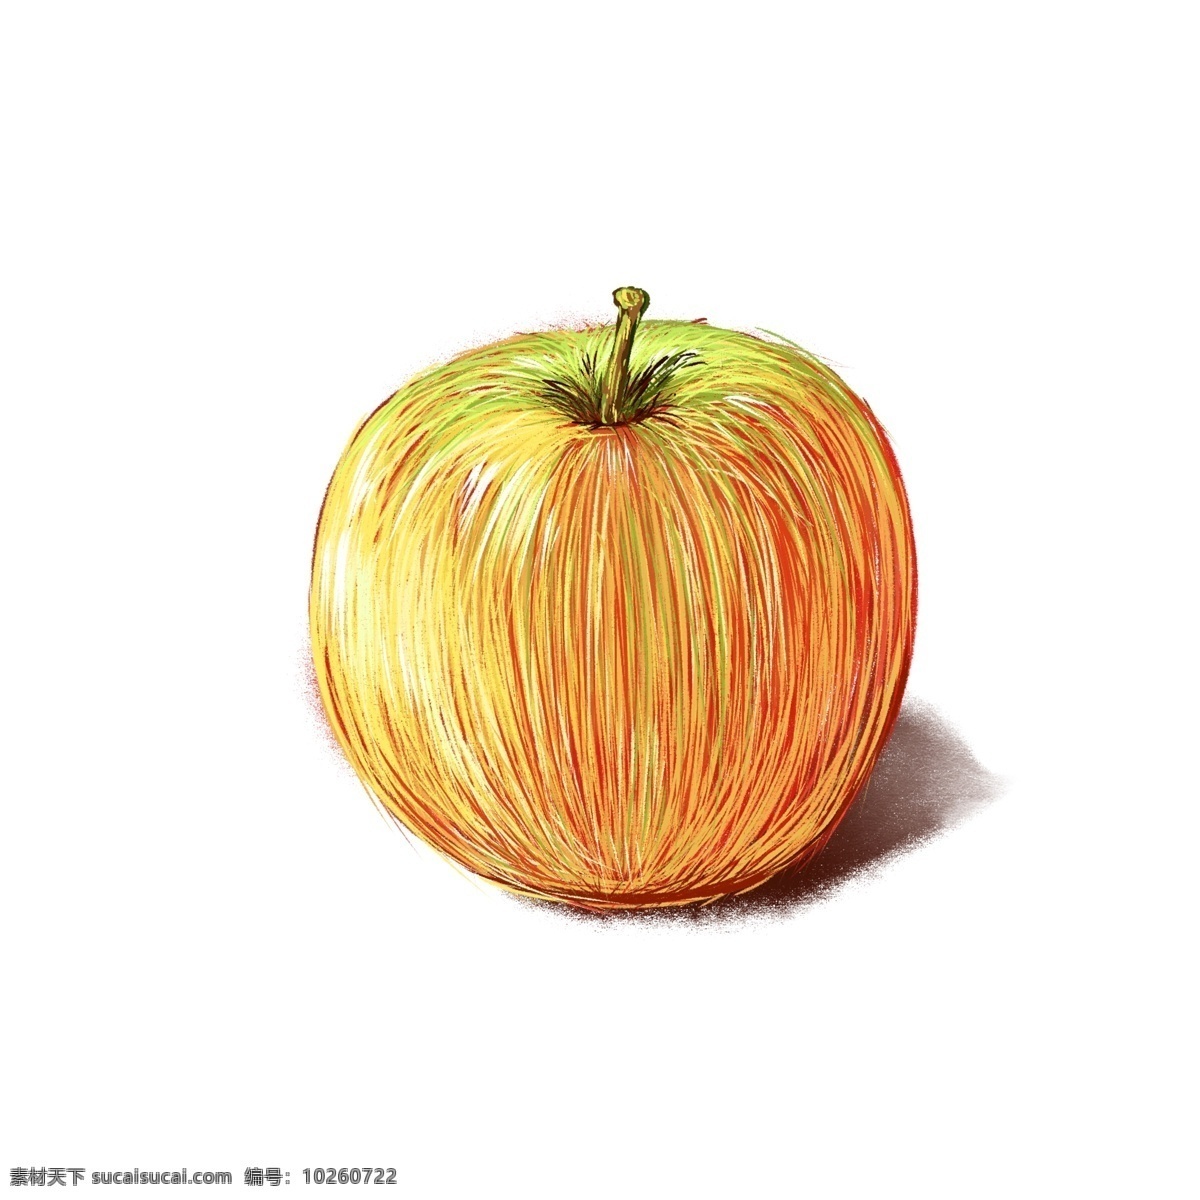 圣诞节 平安夜 平安 果 苹果 手绘 手绘素材 手绘水果 平安果